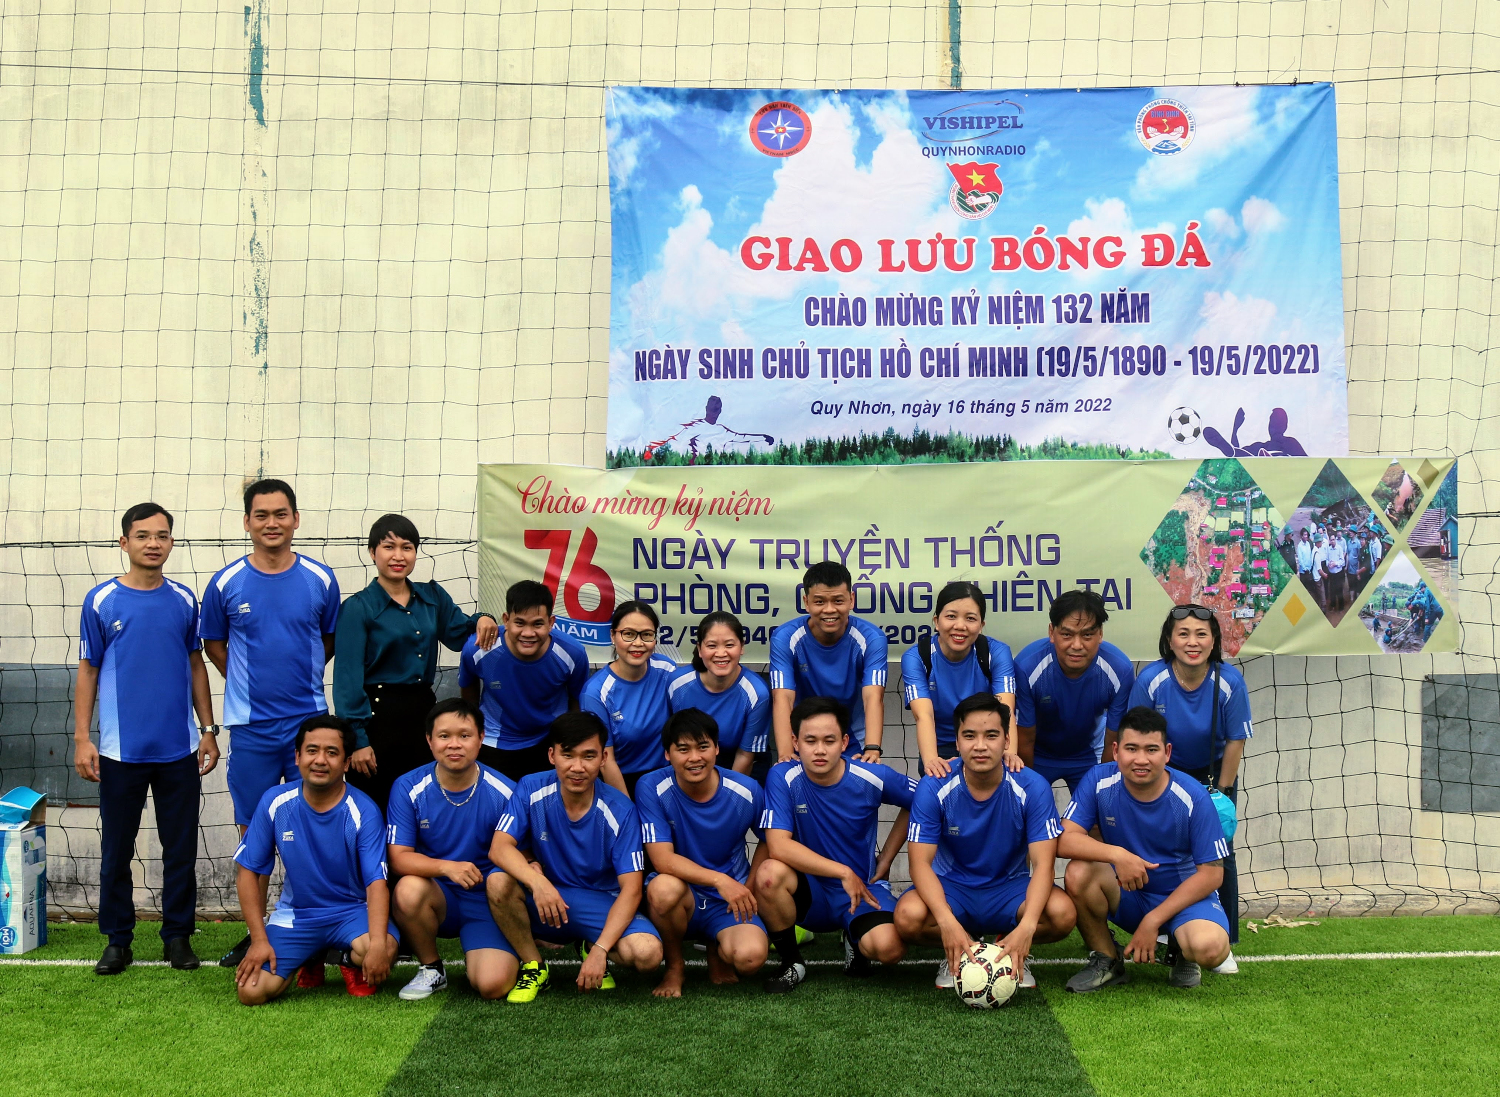 Giao lưu bóng đá giữa Văn phòng Thường trực PCTT với Quy Nhơn Radio và MRCC Đà Nẵng